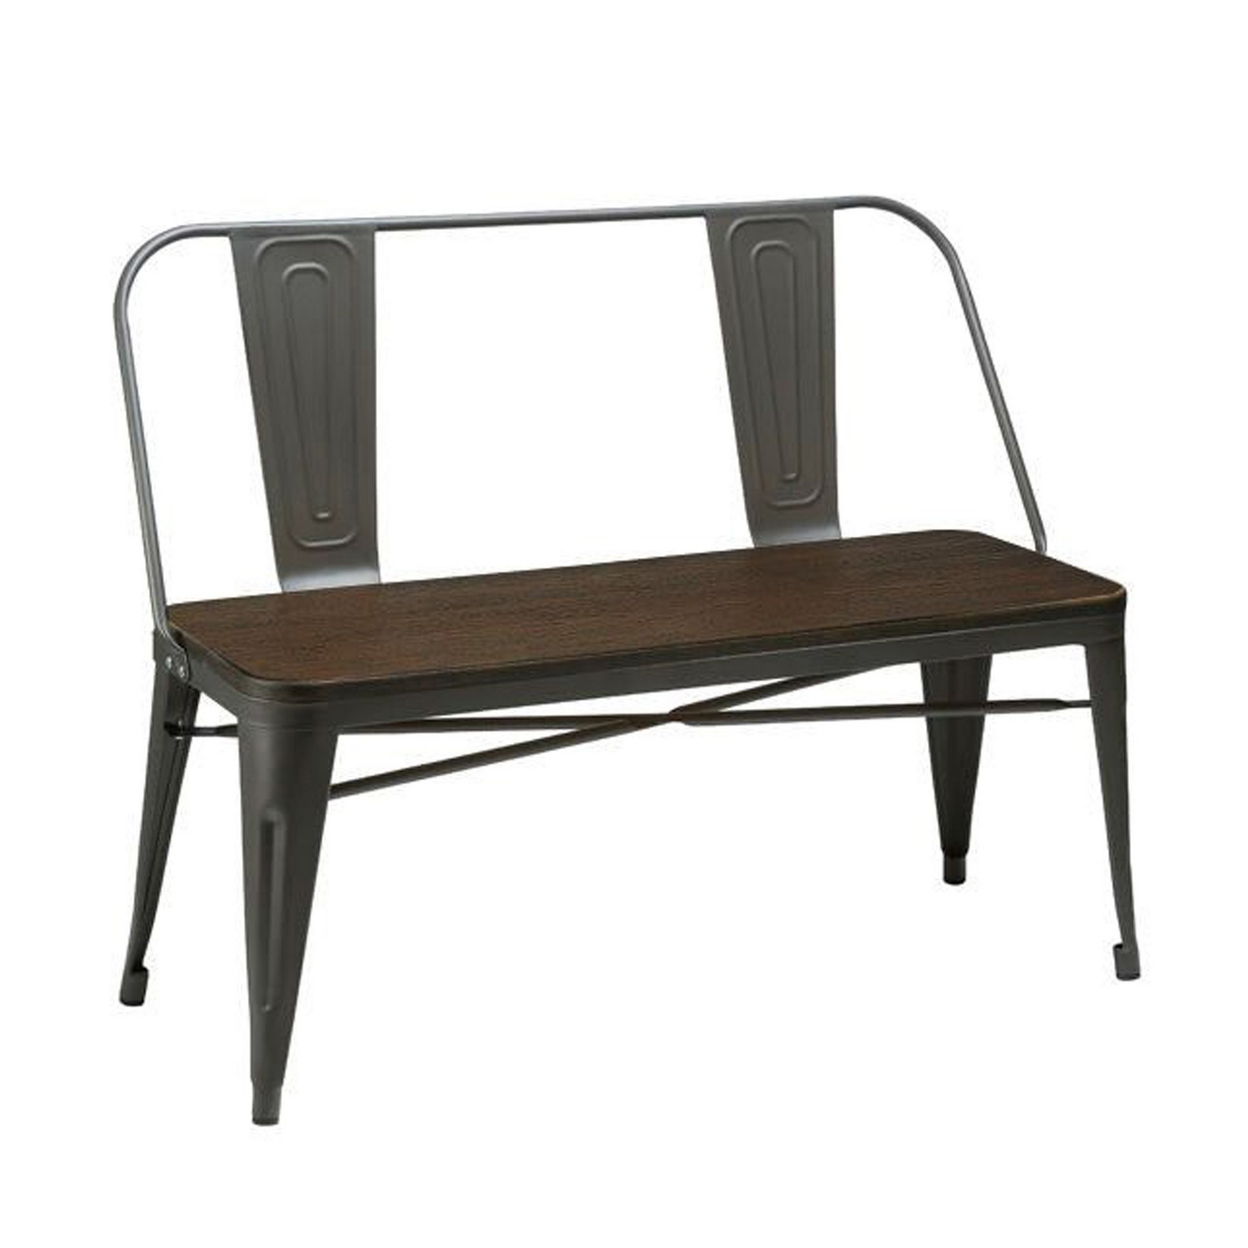 Gina 40 Inch Bench, Smooth Wood Seating, Strong Metal Frame, Dark Gray- Saltoro Sherpi